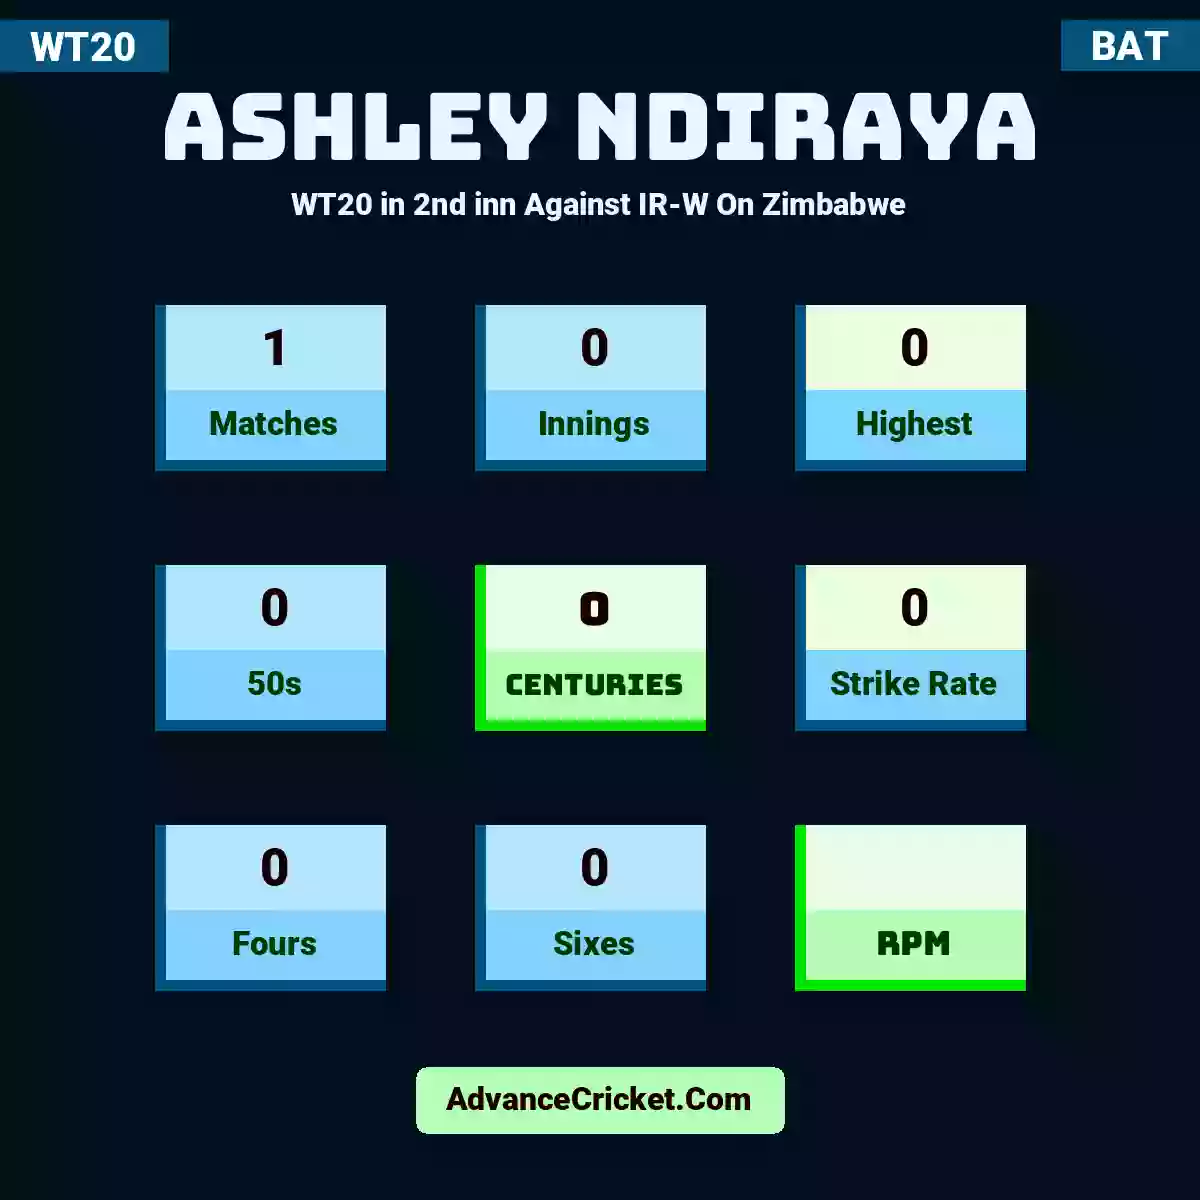 Ashley Ndiraya WT20  in 2nd inn Against IR-W On Zimbabwe, Ashley Ndiraya played 1 matches, scored 0 runs as highest, 0 half-centuries, and 0 centuries, with a strike rate of 0. A.Ndiraya hit 0 fours and 0 sixes.